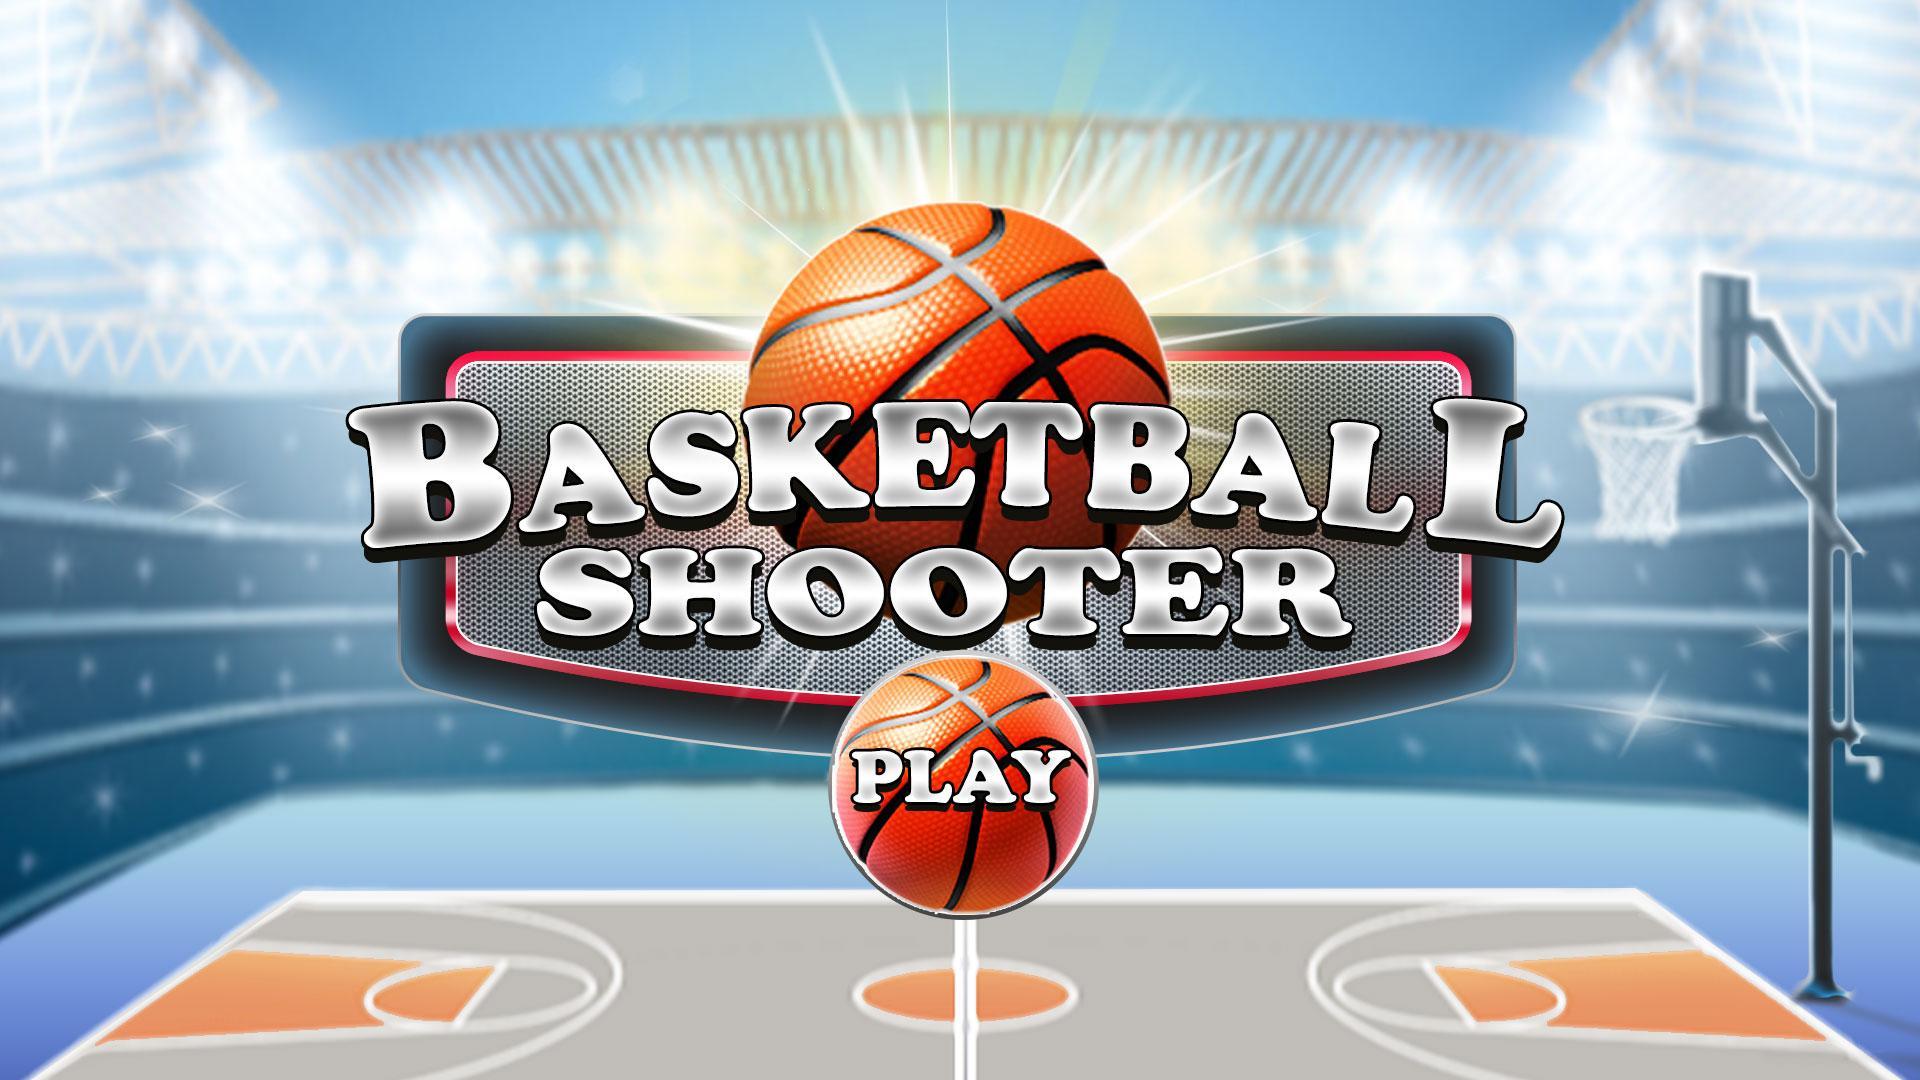 Android 用の バスケットボール ダンキング 射撃 ゲーム Apk をダウンロード